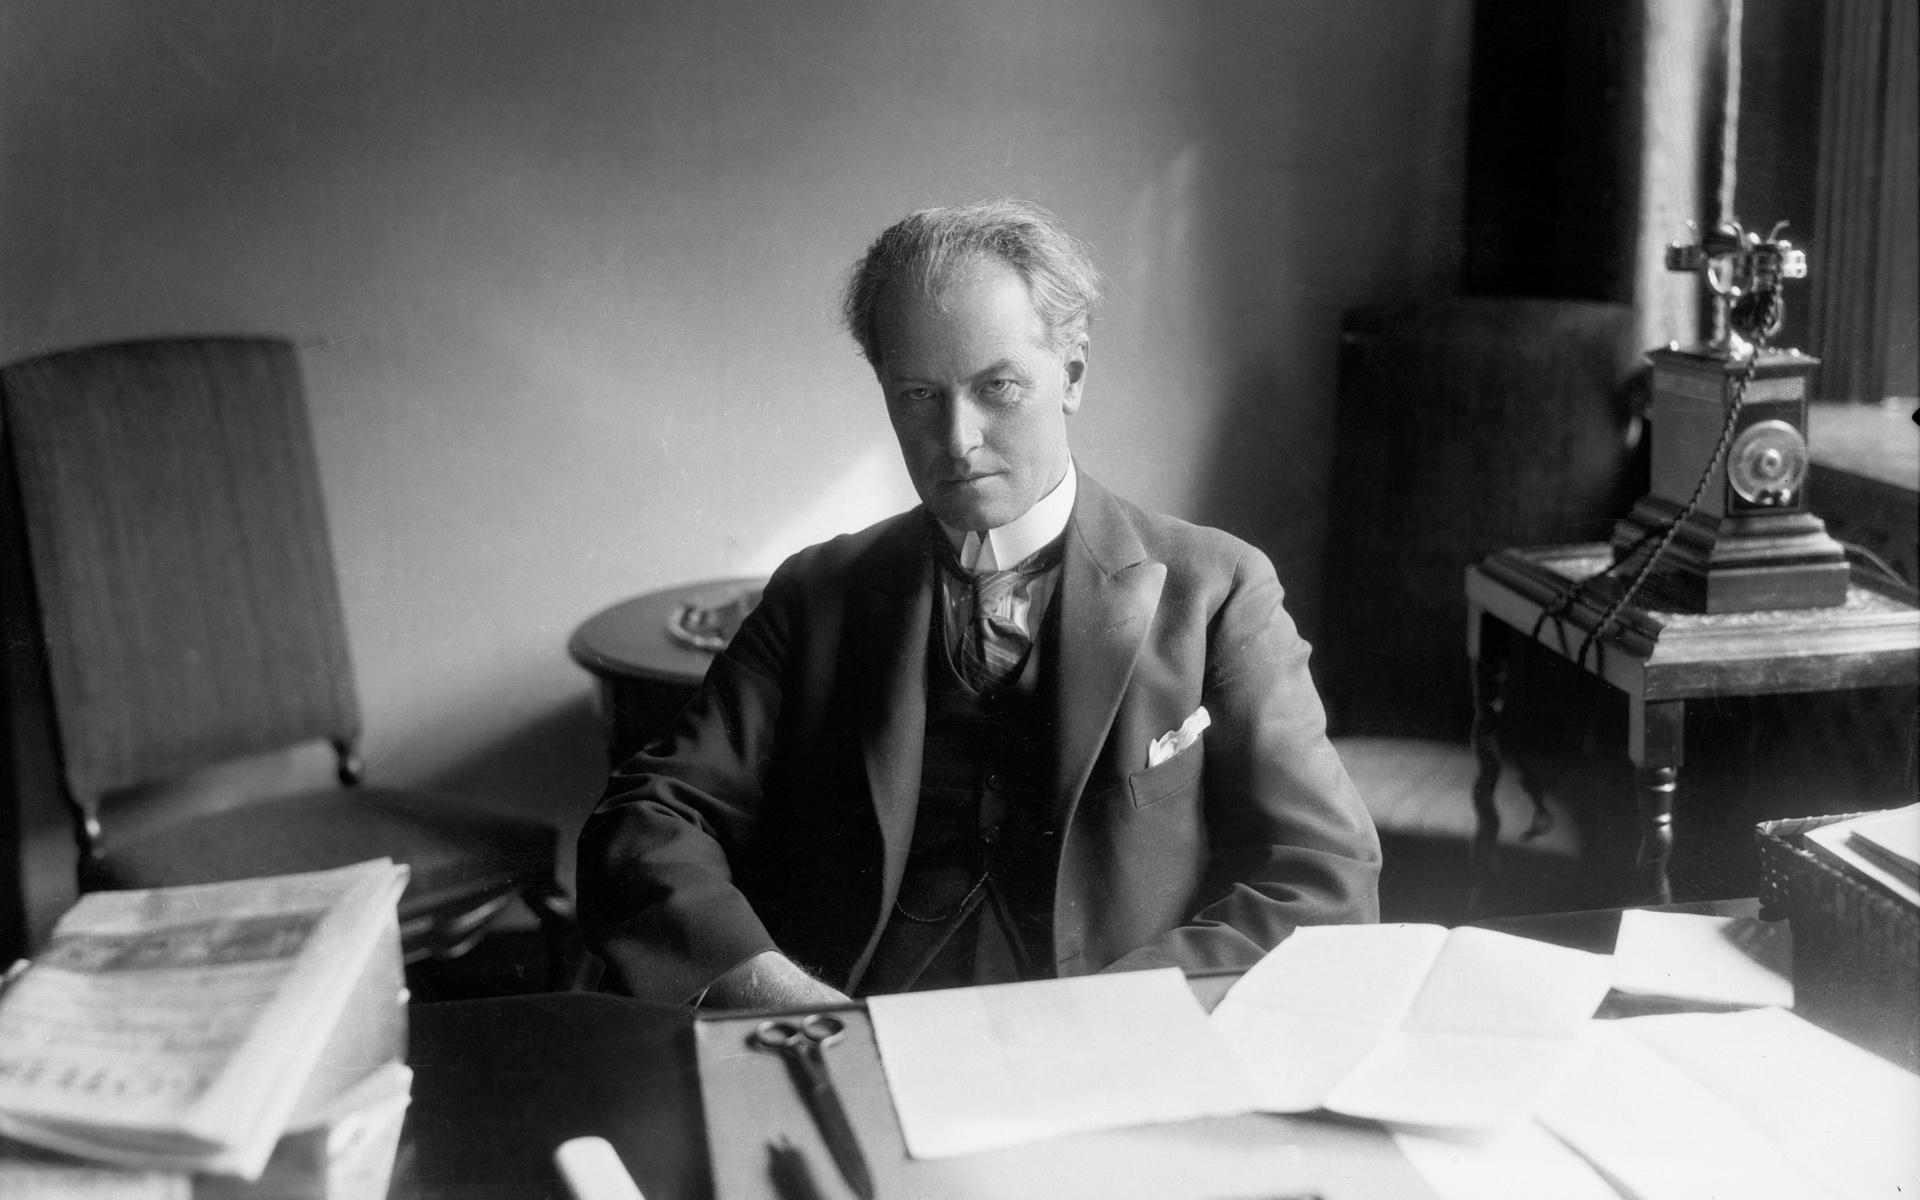 Från 1917 och till och med hans död 1945 var Torgny Segerstedt huvudredaktör för Göteborgs Handels- och Sjöfarts-Tidning. Bilden tagen i Göteborg omkring 1925.